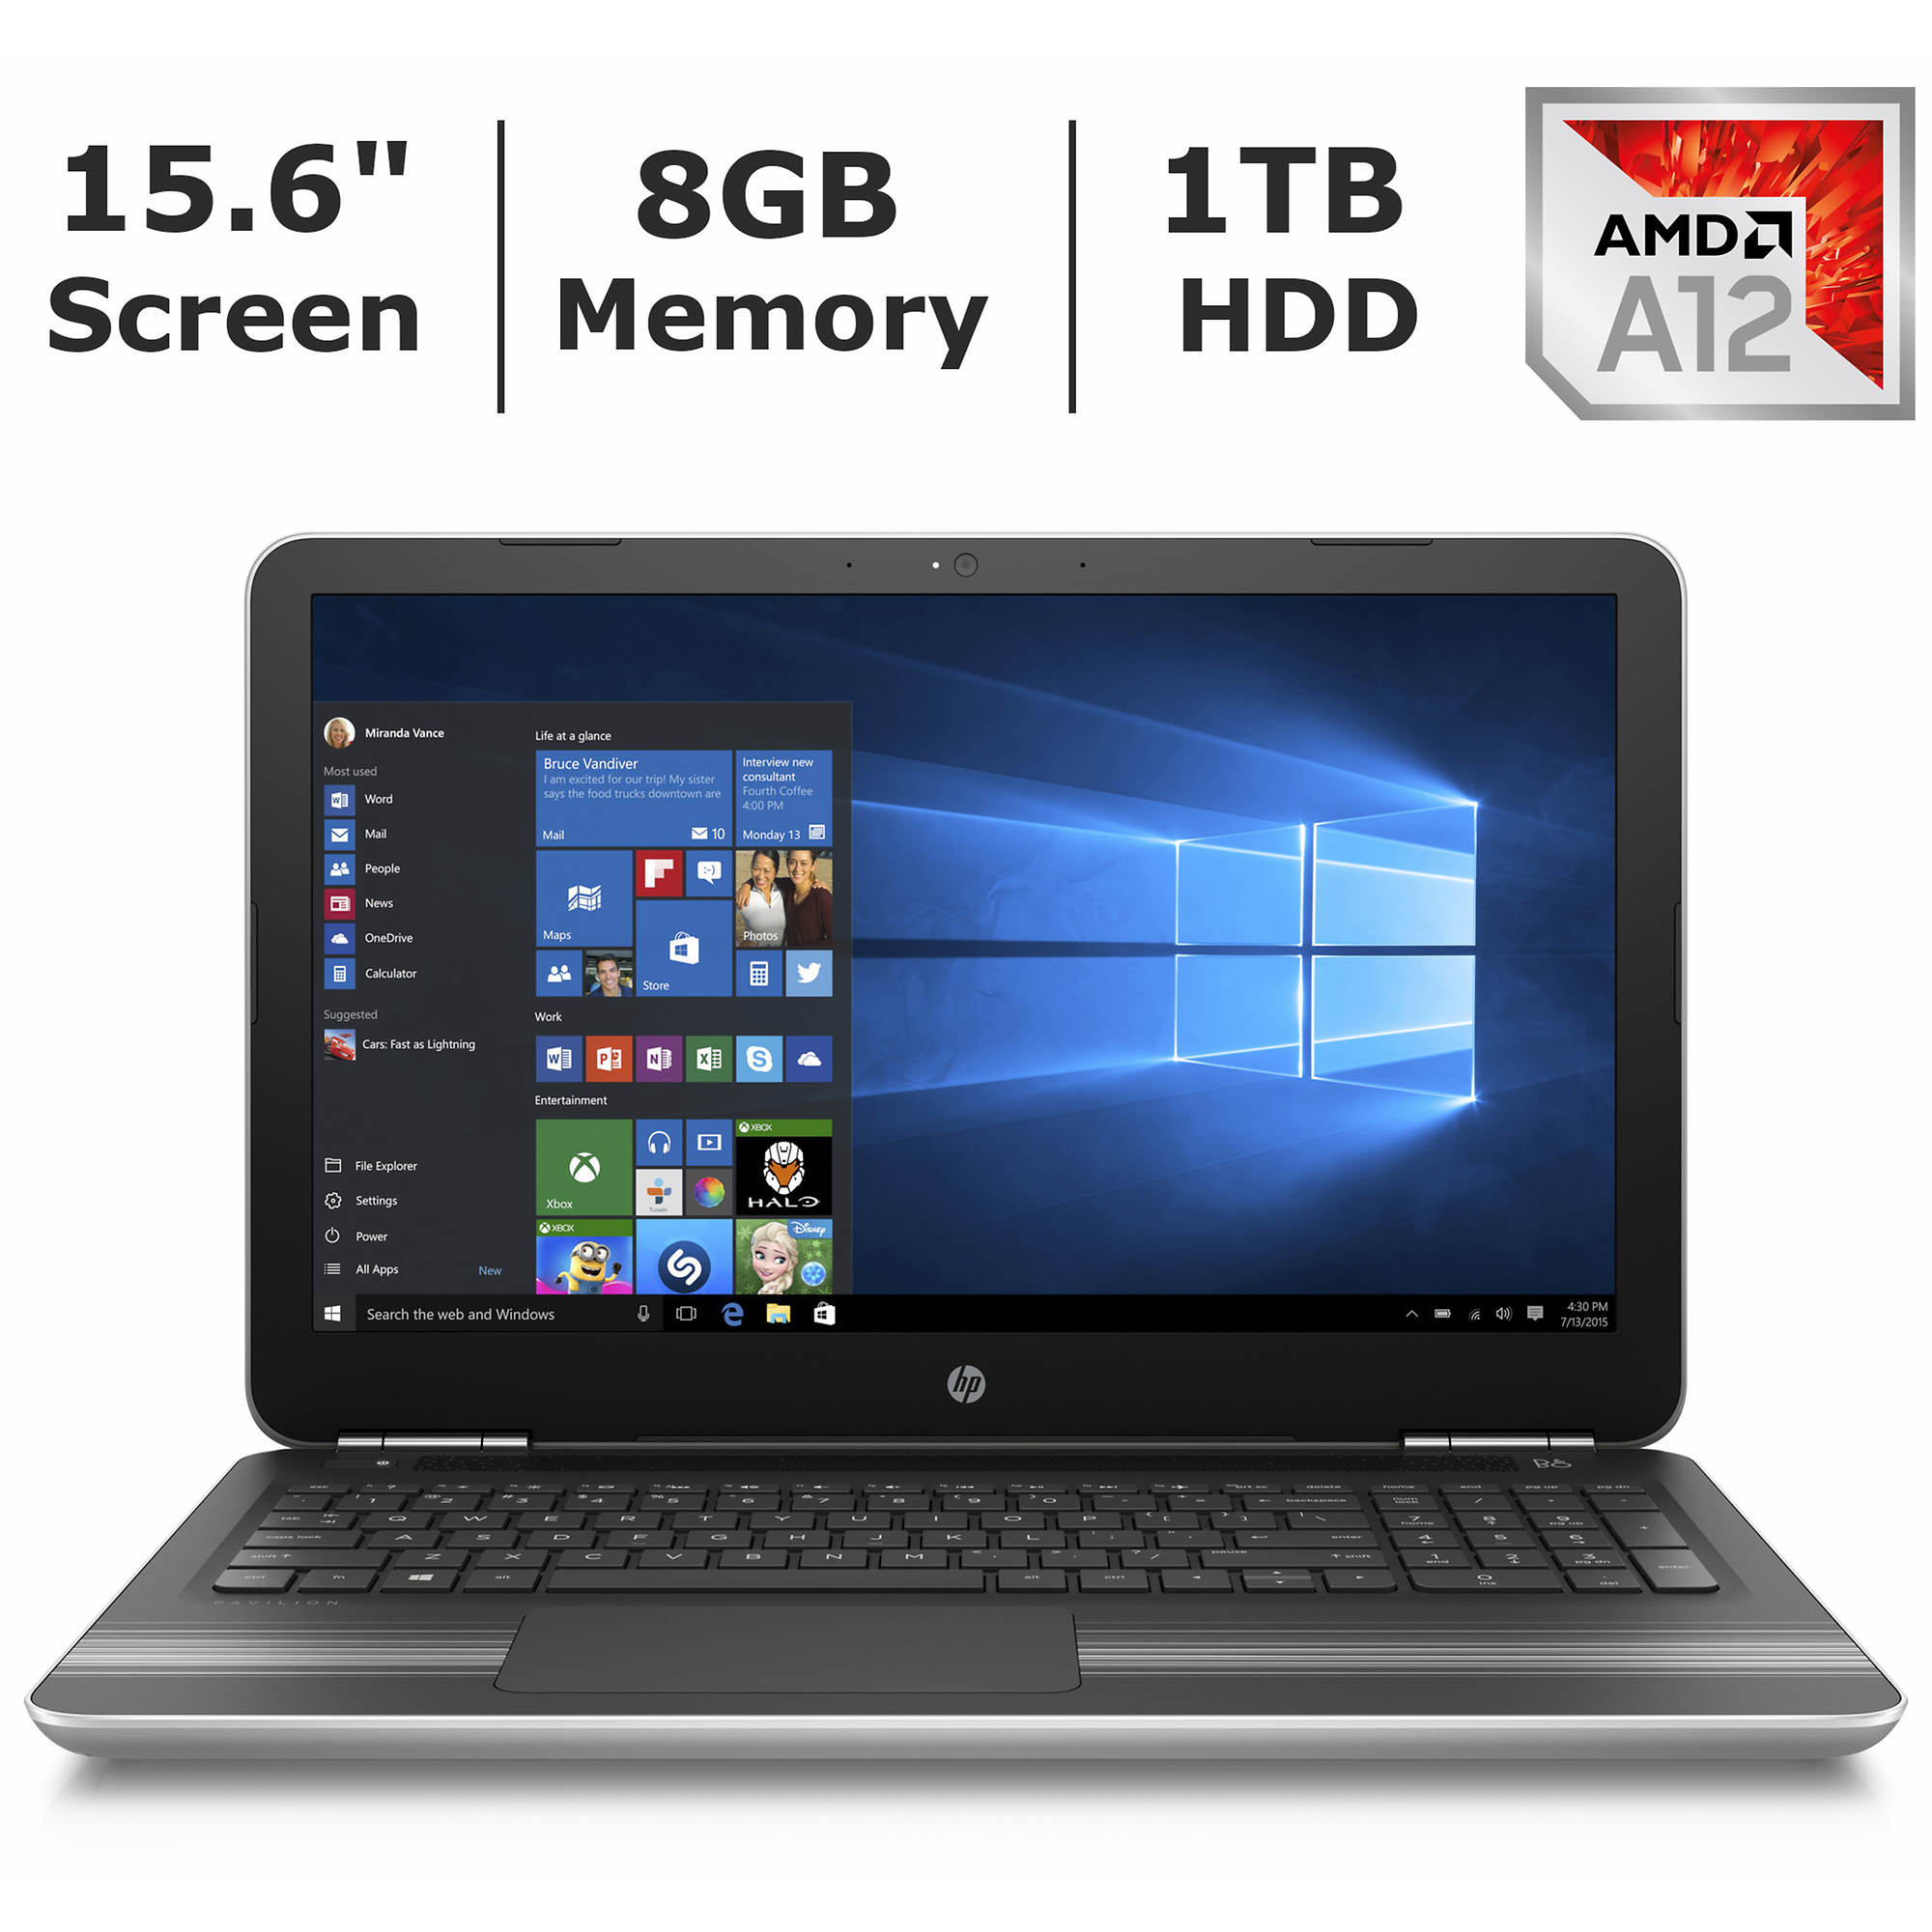 HP Pavilion 15-aw094nr Laptop, 7th Gen AMD A12, 8GB RAM, 1TB HDD